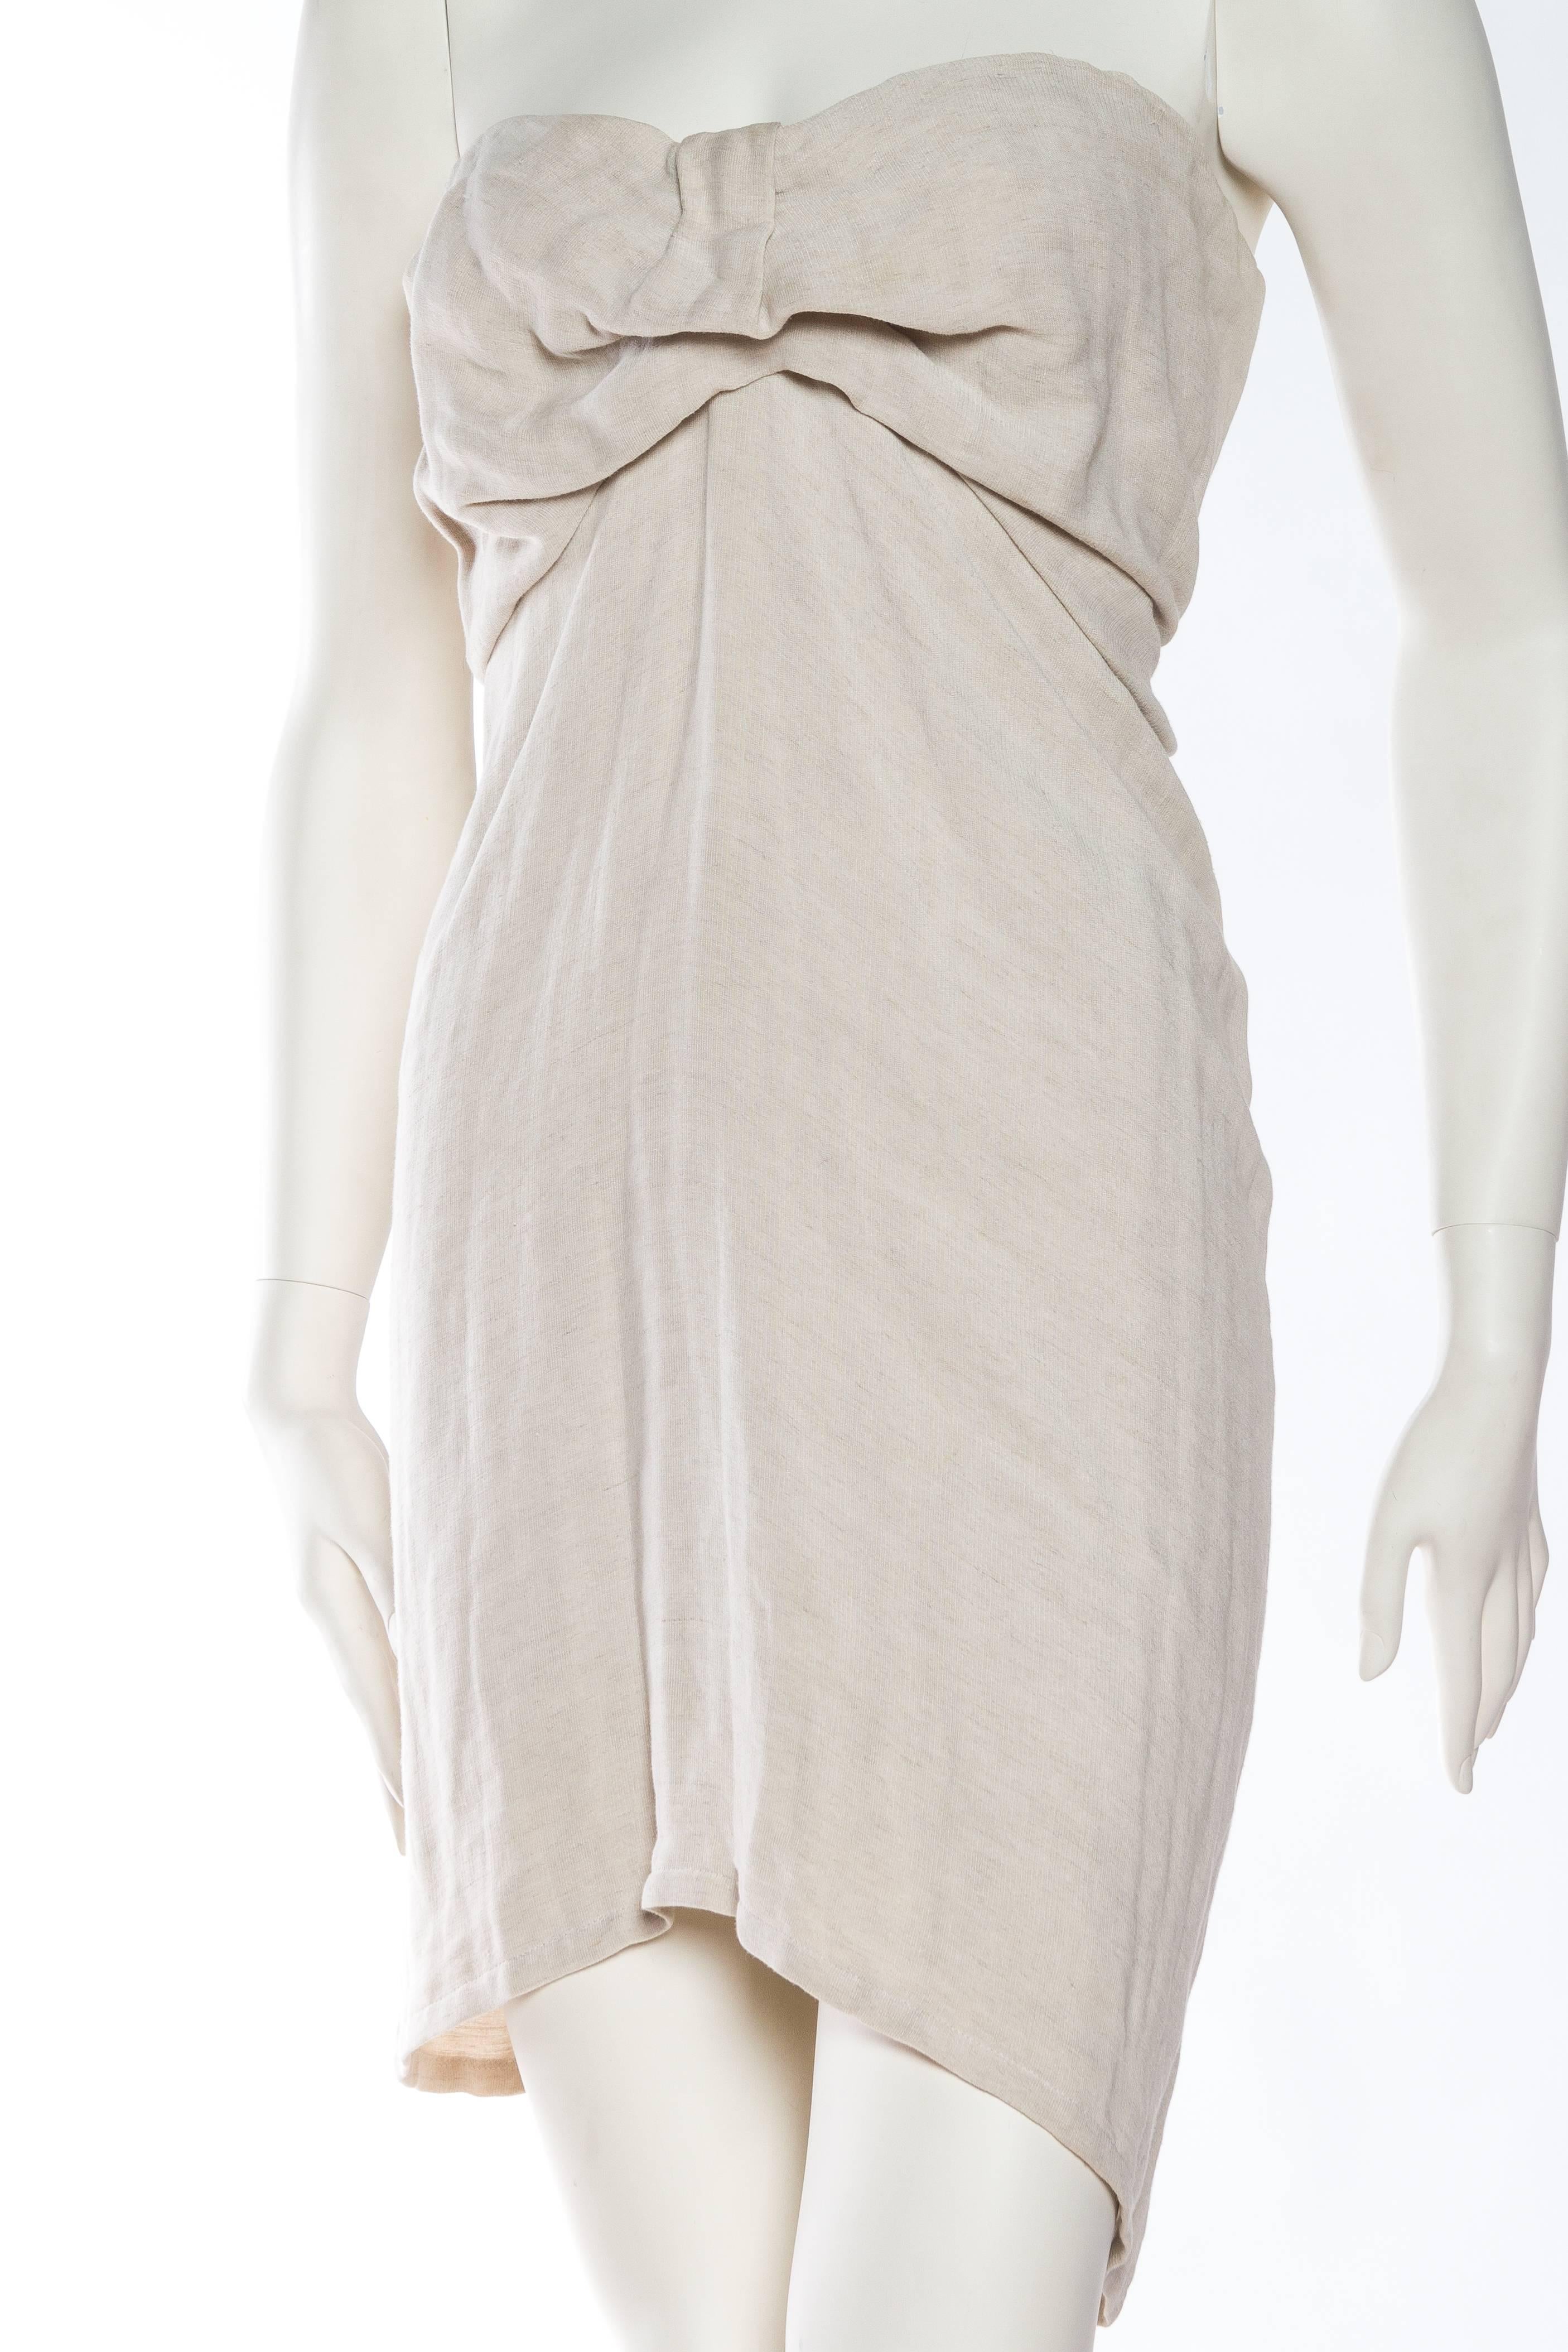 Gray 1990s Donna Karan Minimalist Jersey Dress